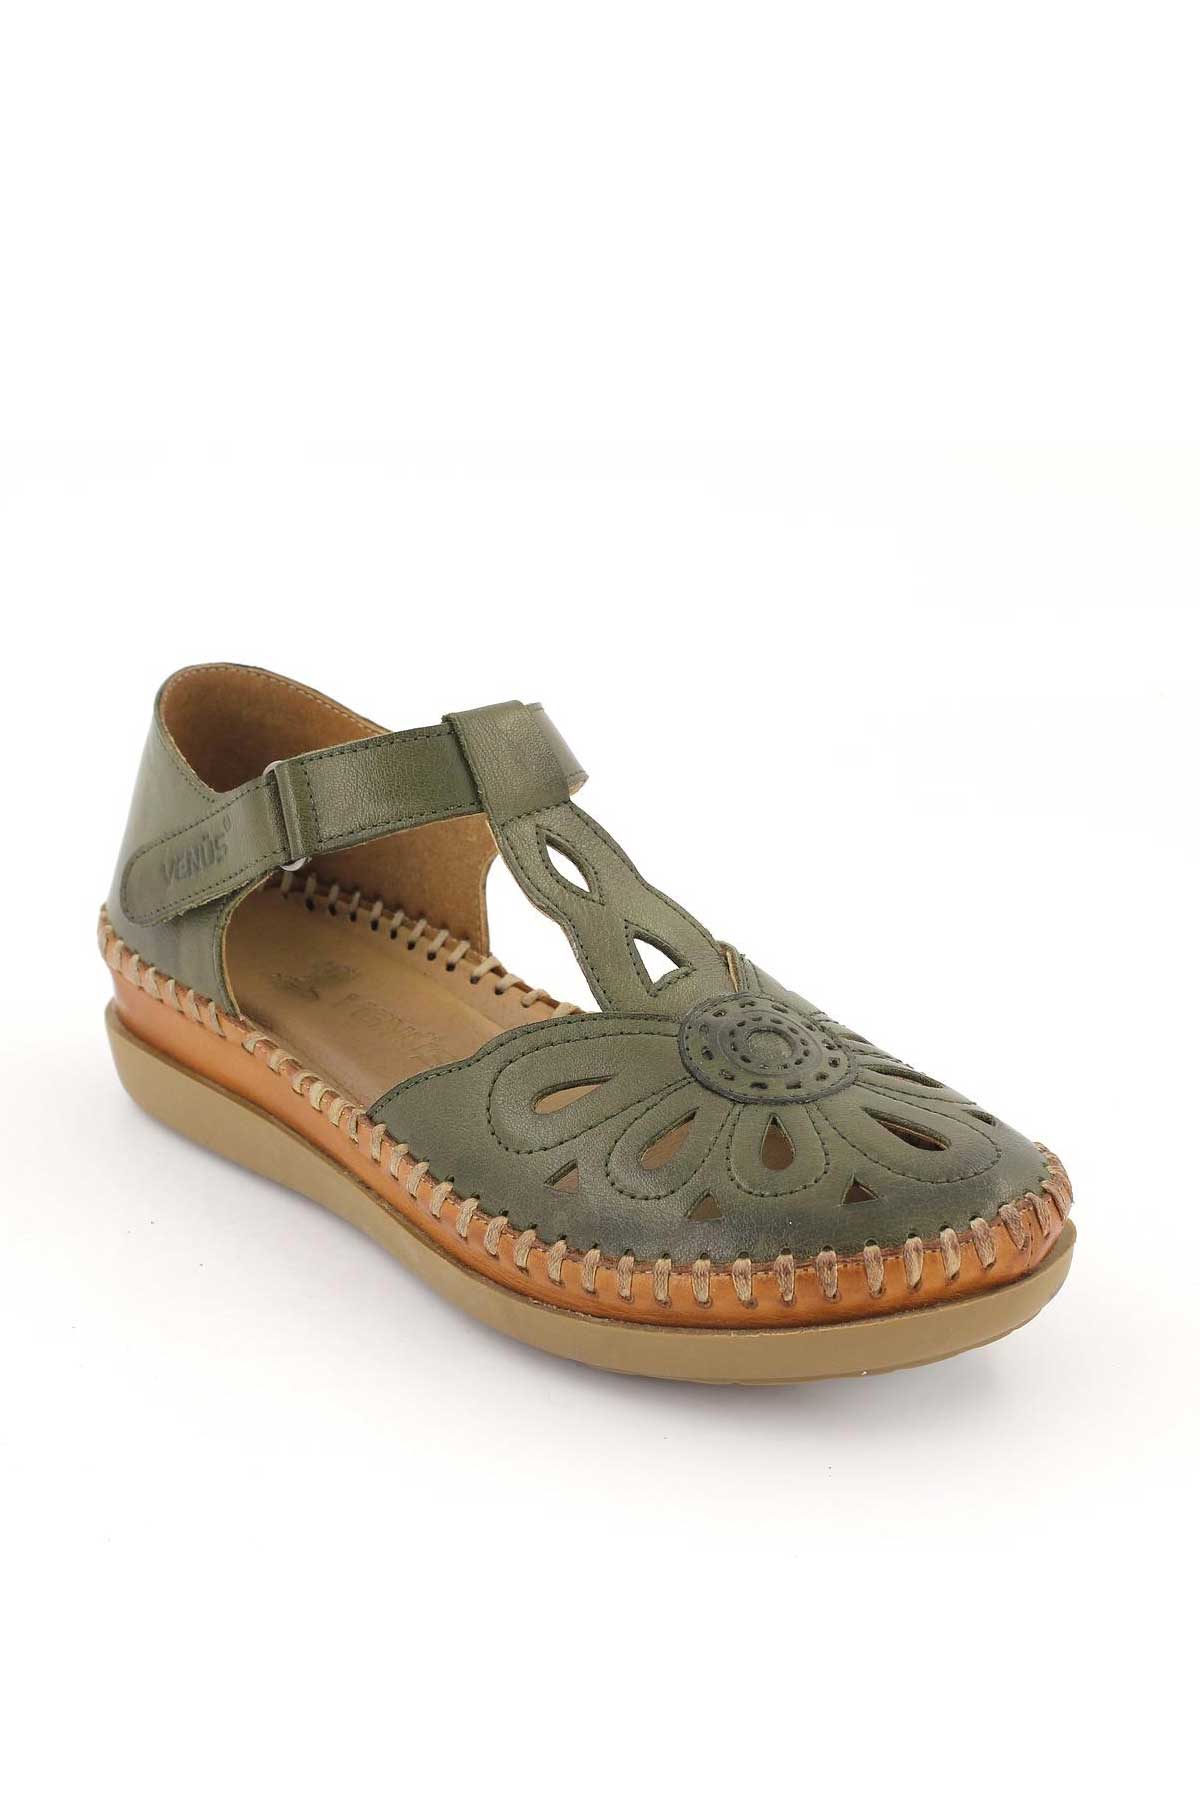 Kadın Comfort Sandalet Yeşil 18793505 - Thumbnail